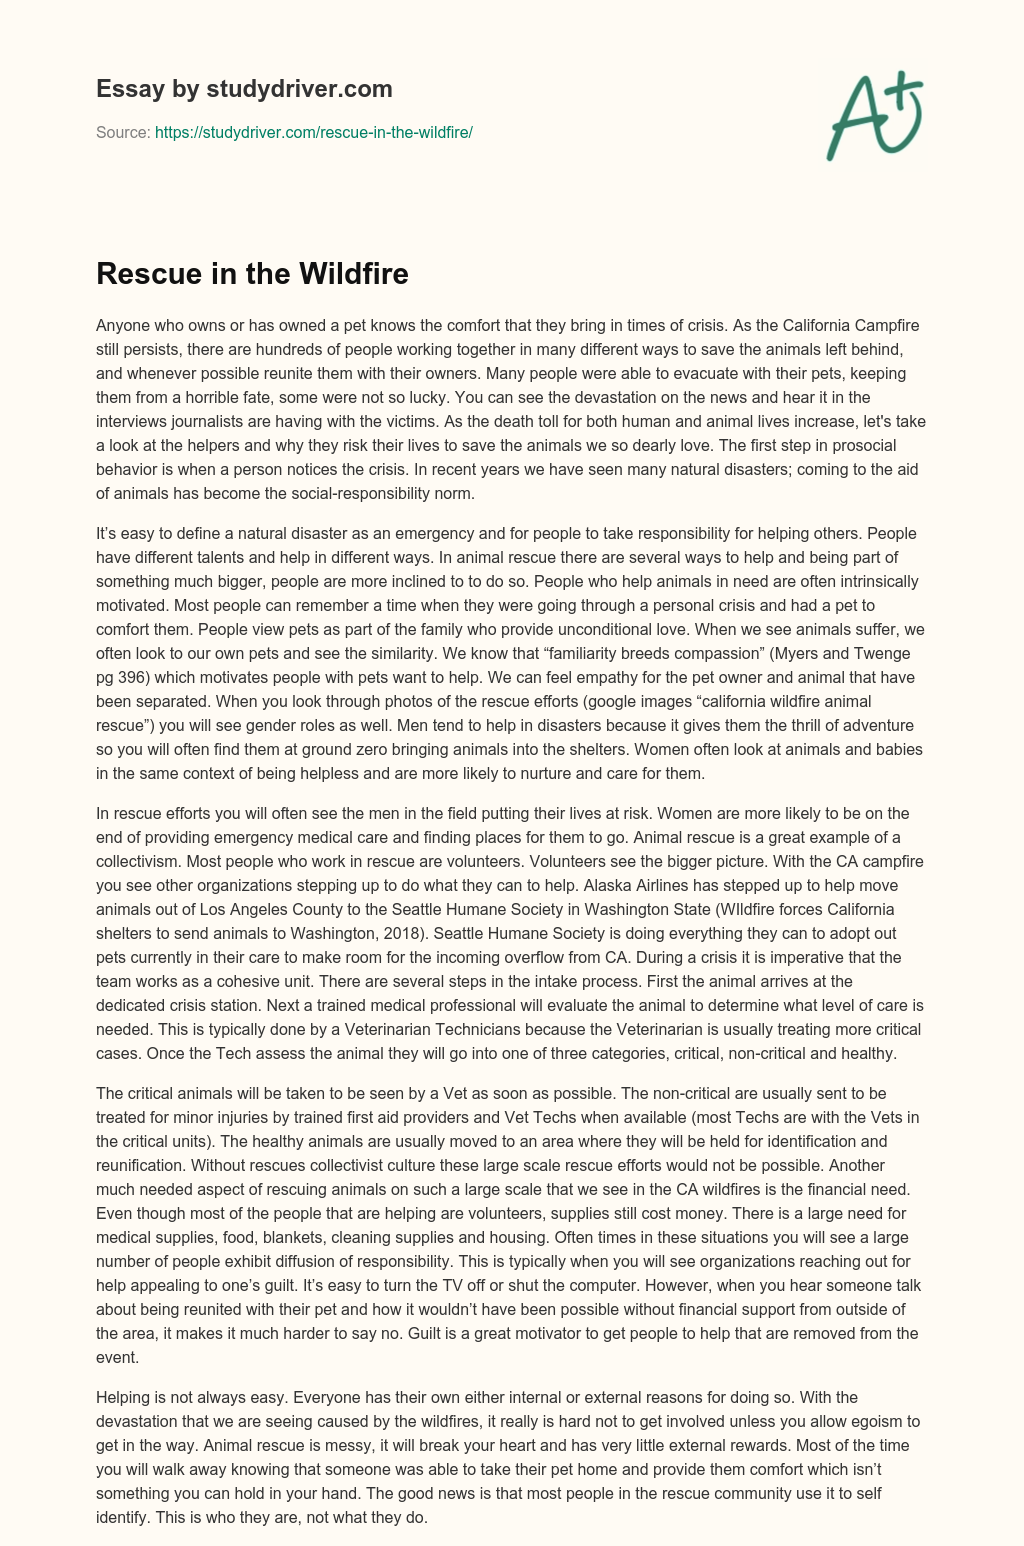 Rescue in the Wildfire essay